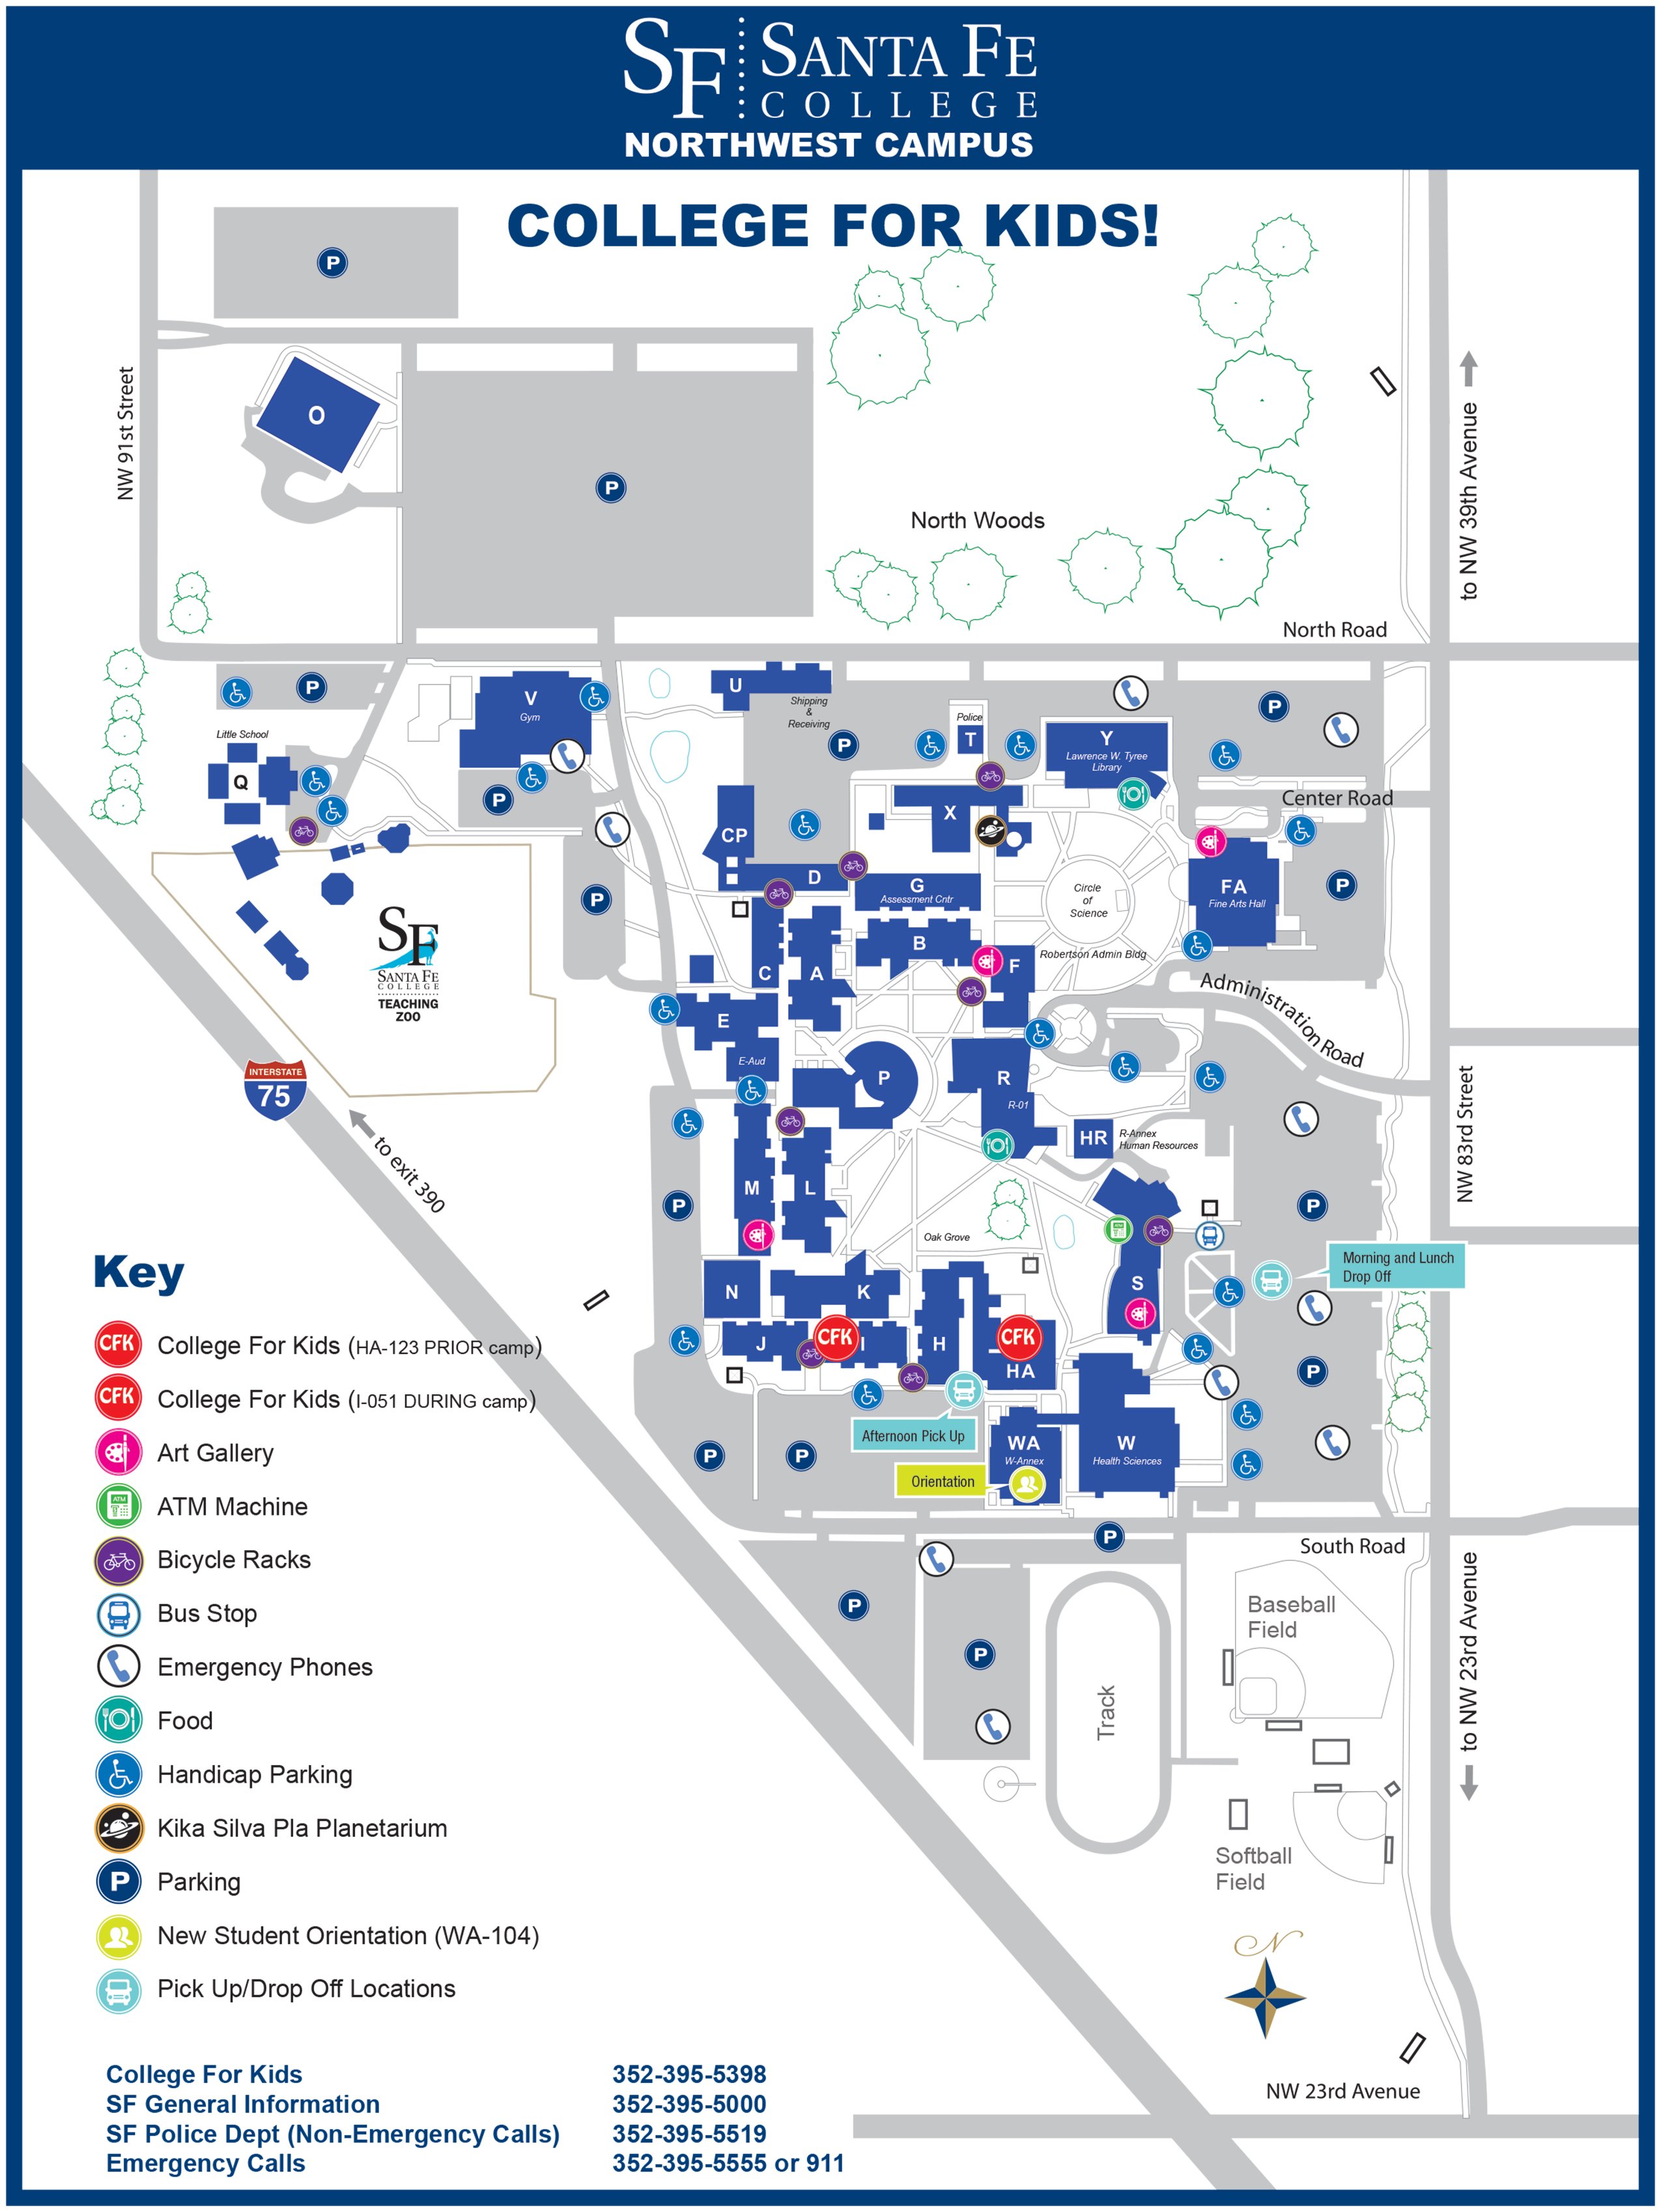 santa fe college campus map Santa Fe College Campus Map Campus Map santa fe college campus map